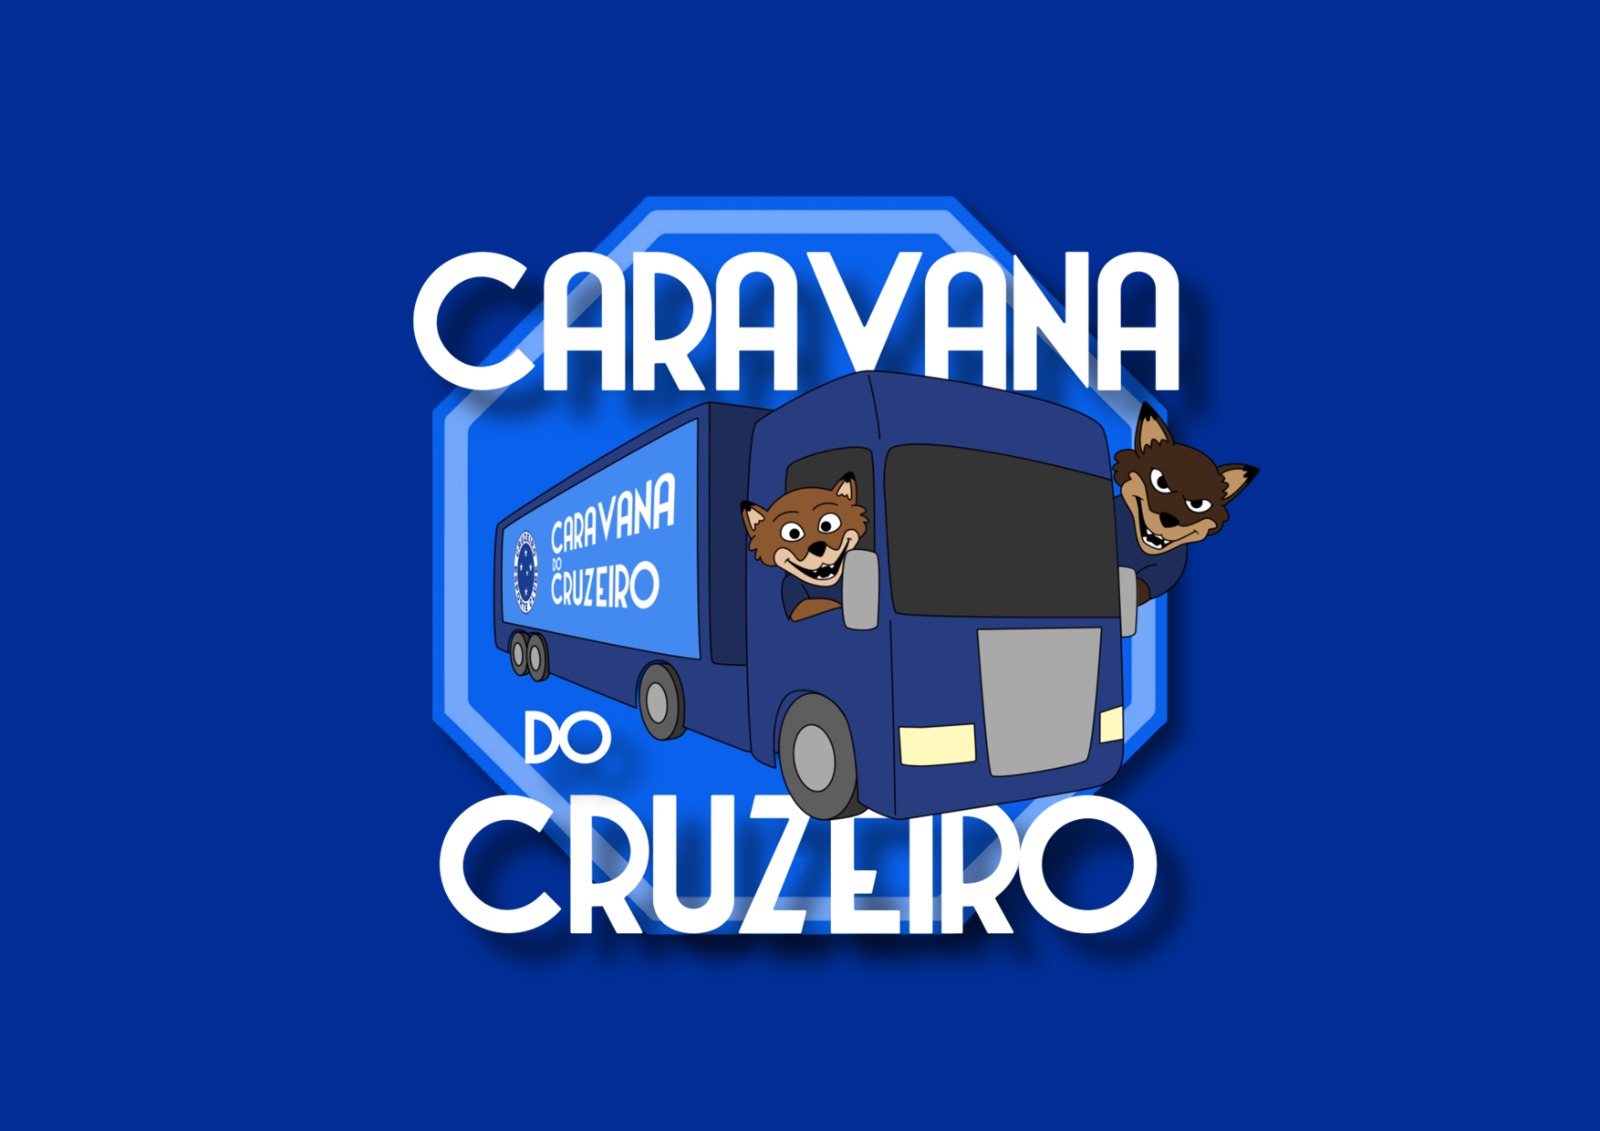 CHEGOU A HORA! Apresentada por Betfair, ‘Caravana do Cruzeiro’ retorna no dia 18 de fevereiro